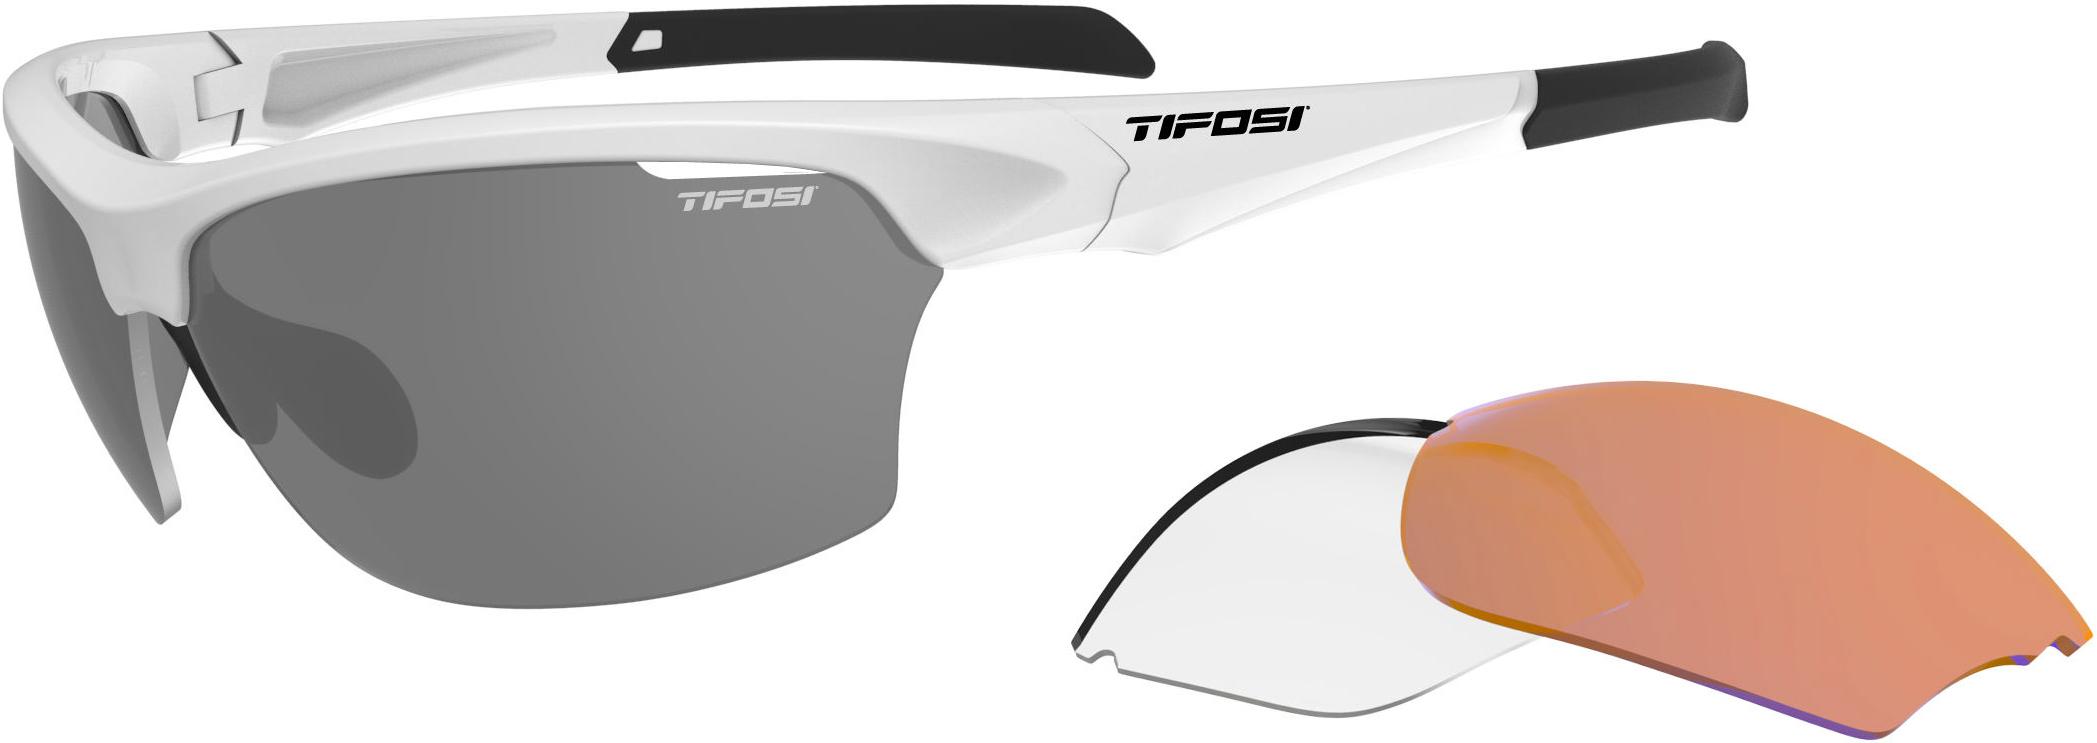 Tifosi Eyewear Intense Triple Lens - White